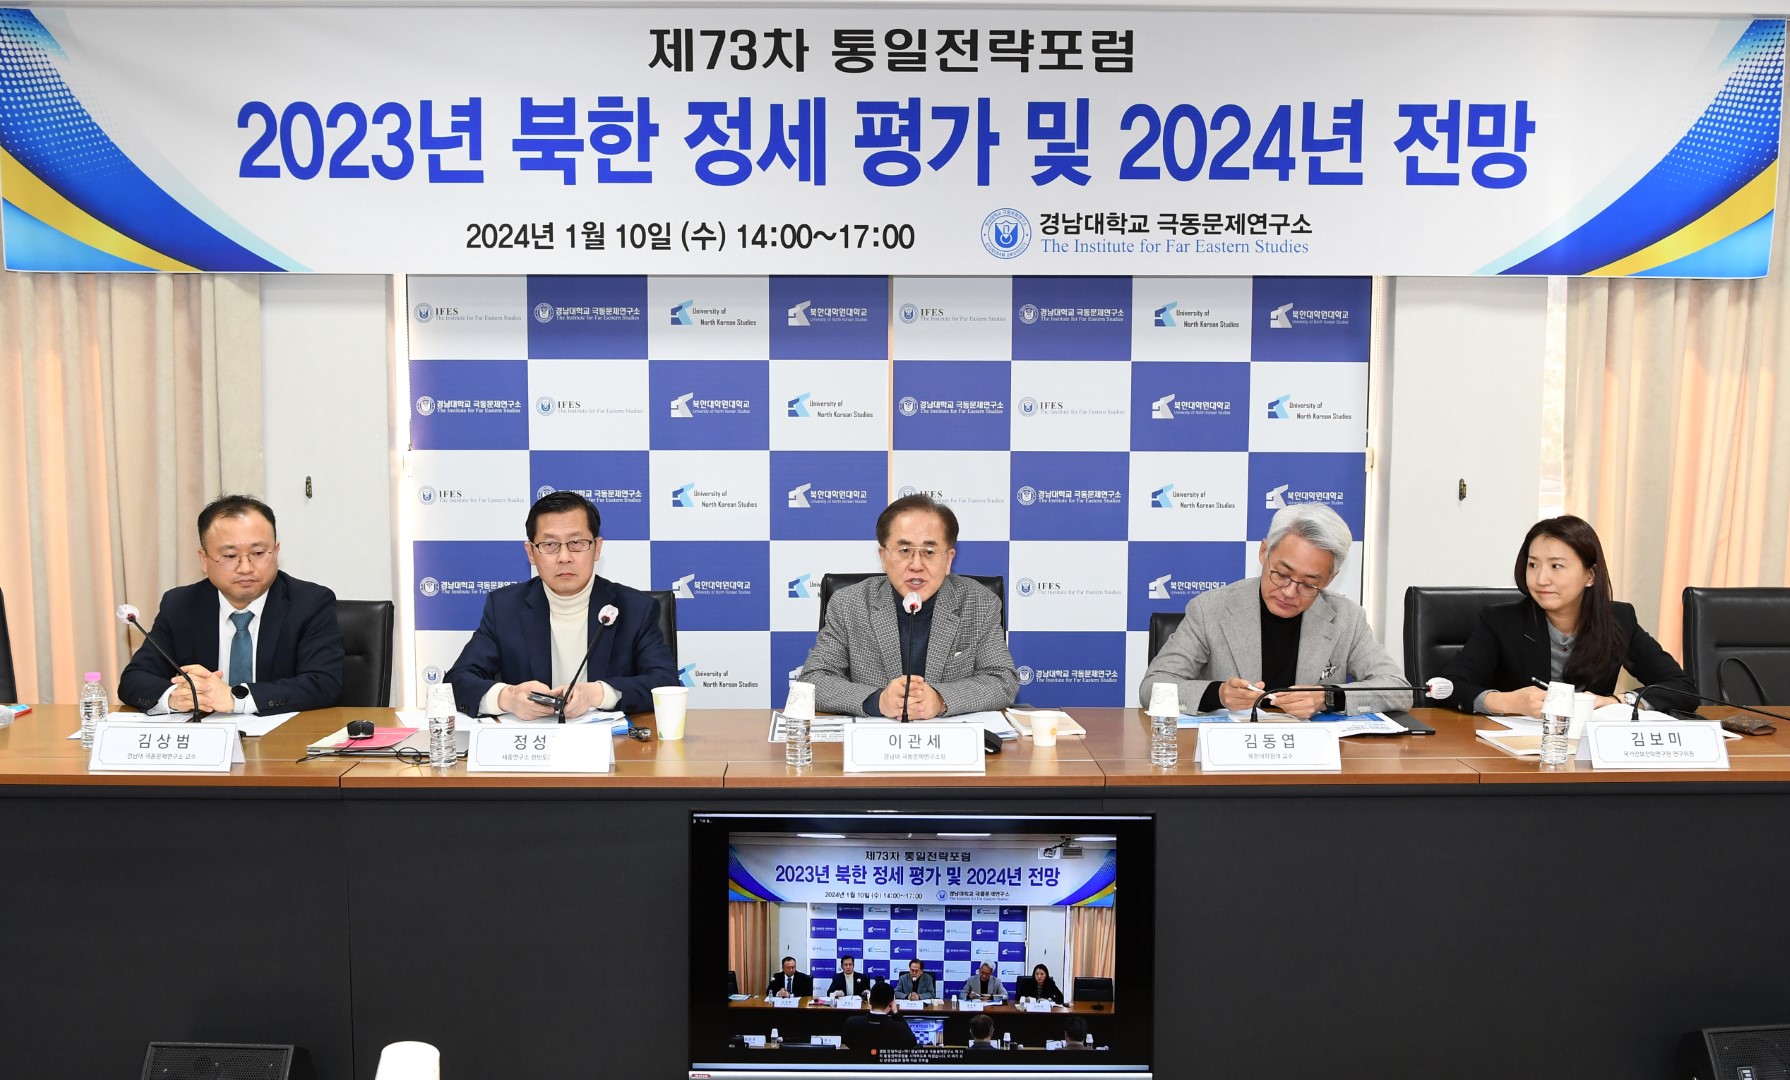 『제73차 통일전략포럼』“2023년 북한 정세평가 및 2024년 전망” 개최 대표이미지